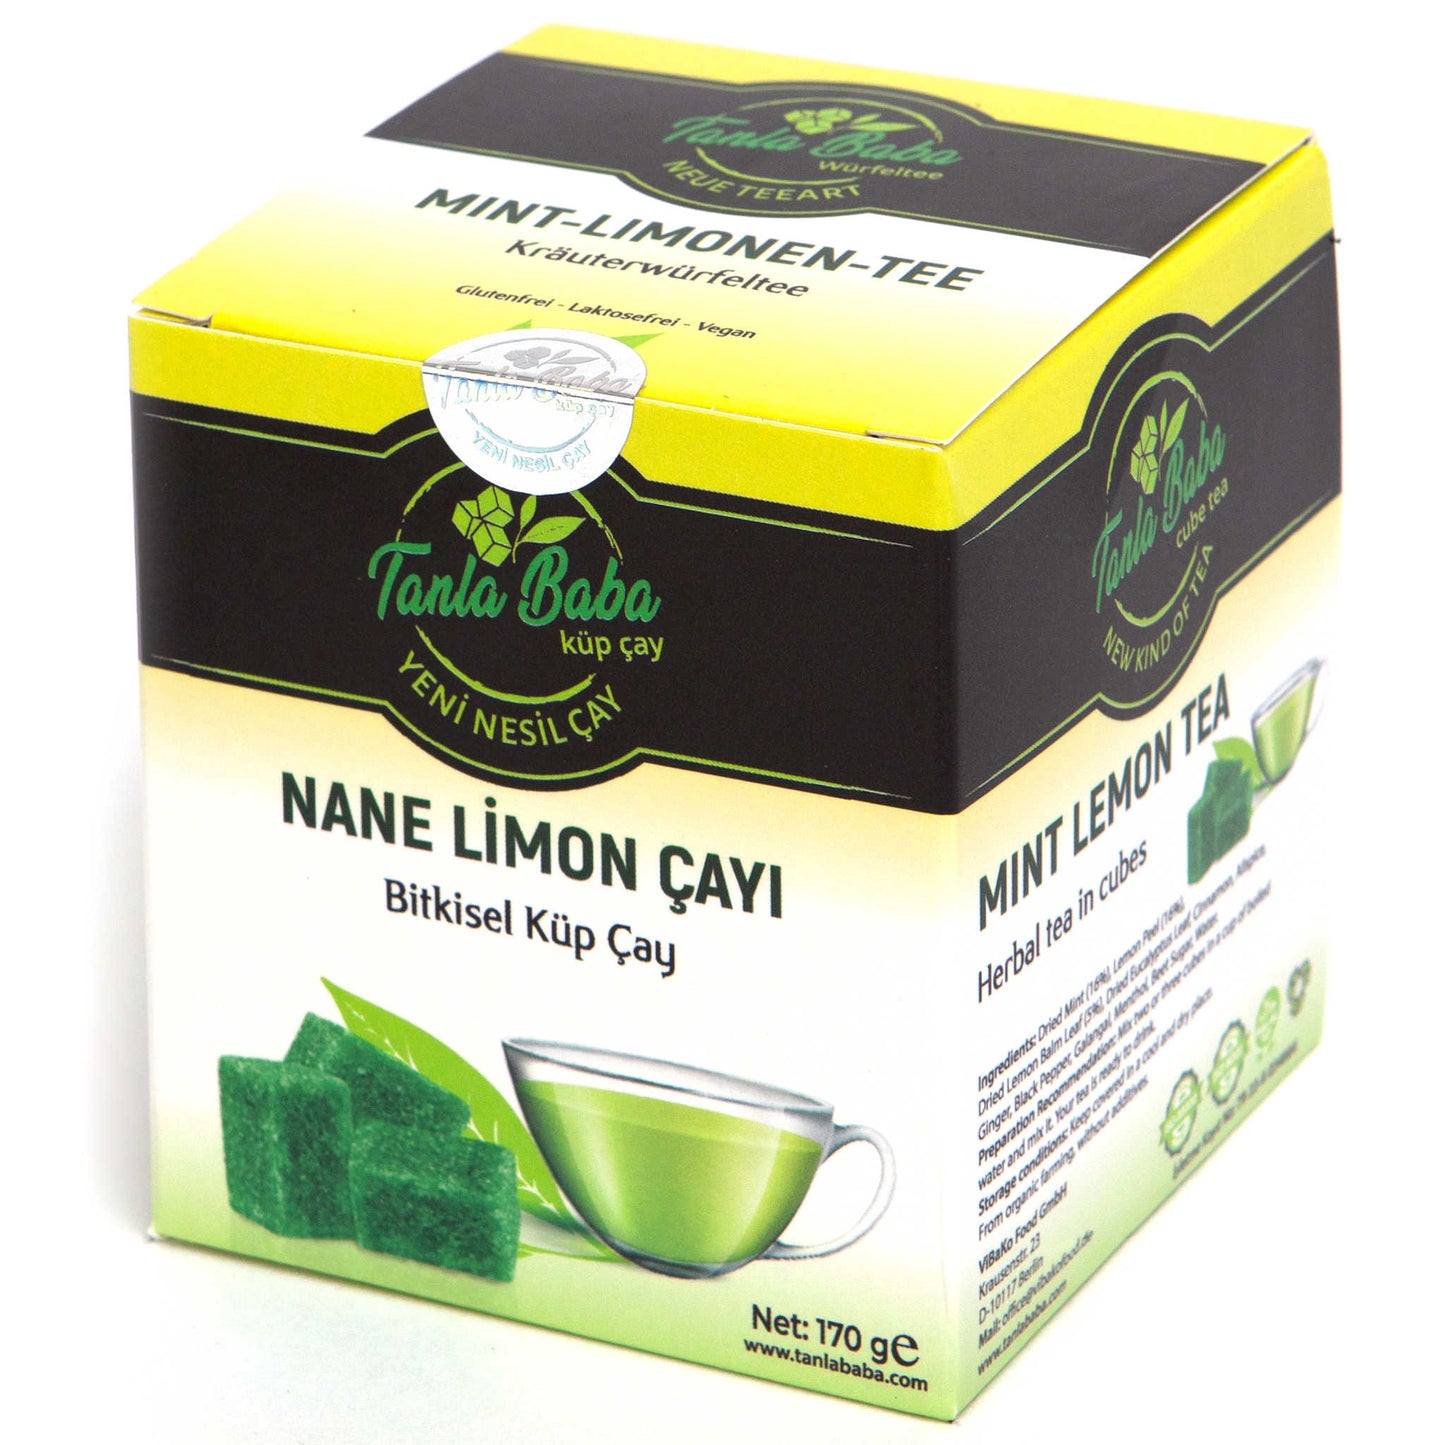 
                  
                    Mint-Limonen-Tee
                  
                